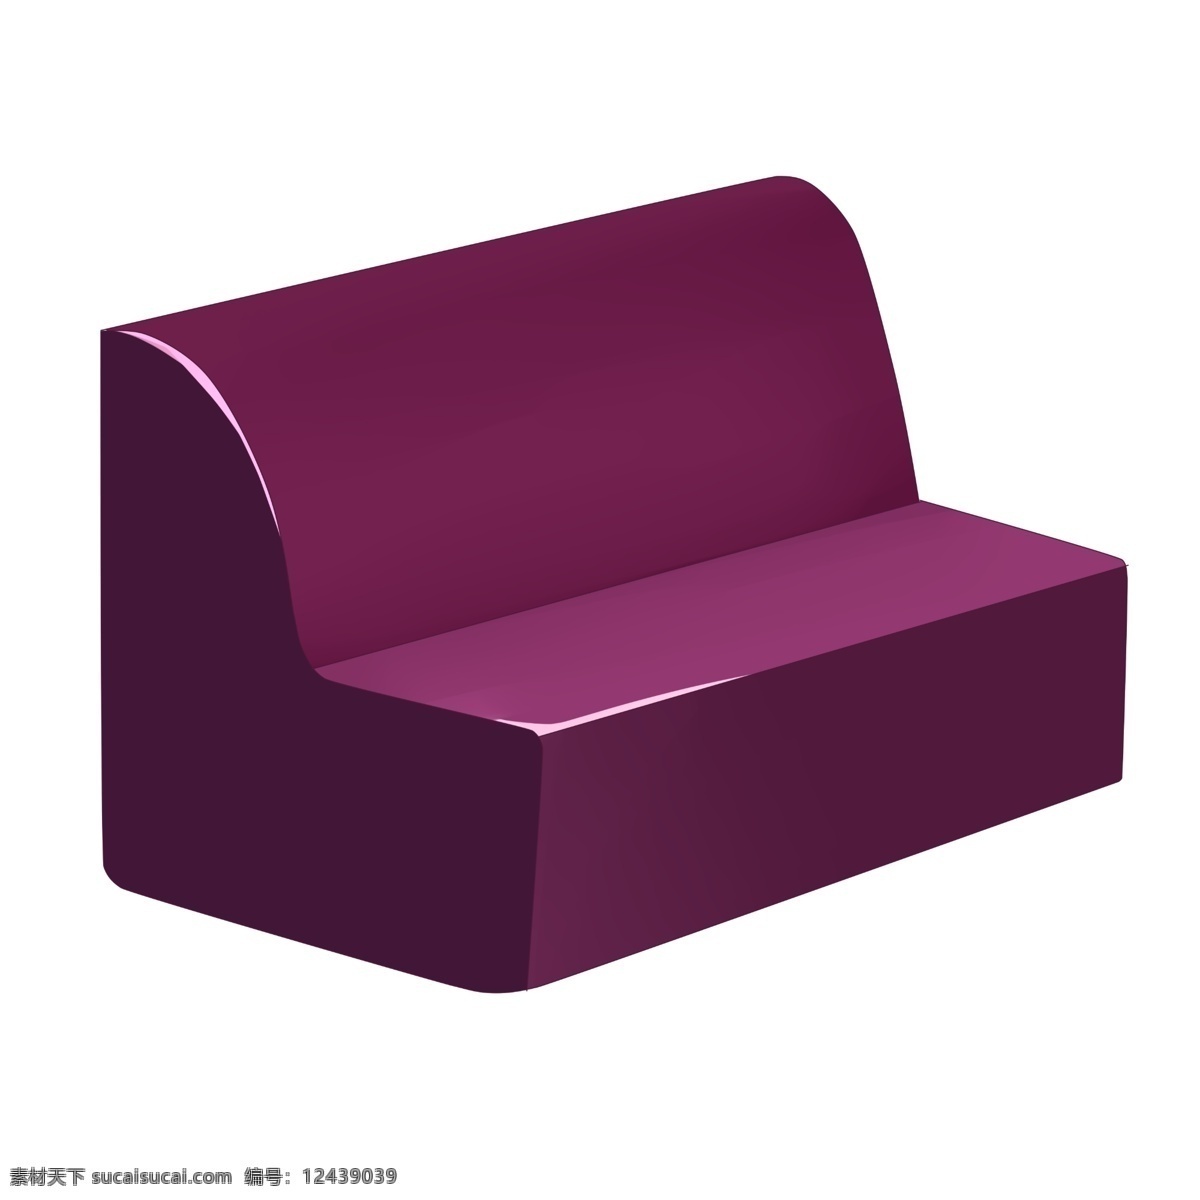 软 包 紫色 椅子 插画 紫色的椅子 卡通插画 椅子插画 家具插画 家具椅子 木质椅子 软包的椅子